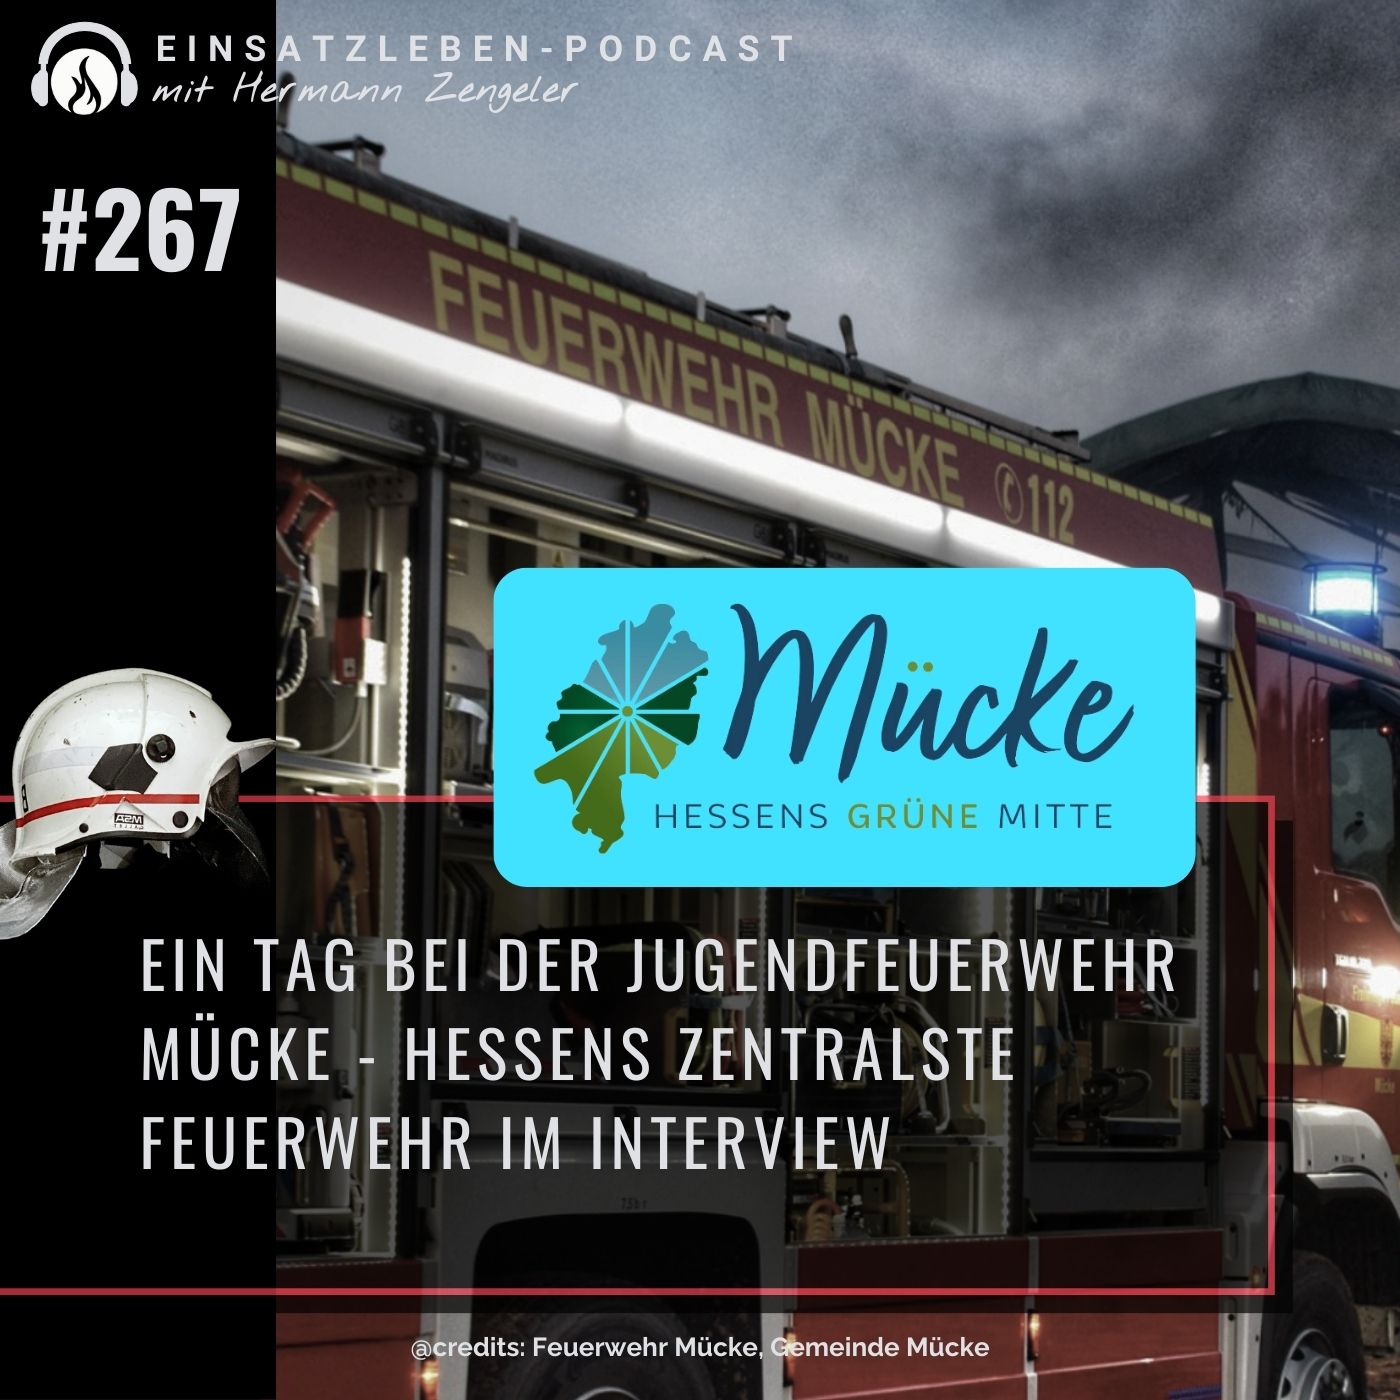 Ein Tag bei der Jugendfeuerwehr Mücke - Hessens zentralste Feuerwehr